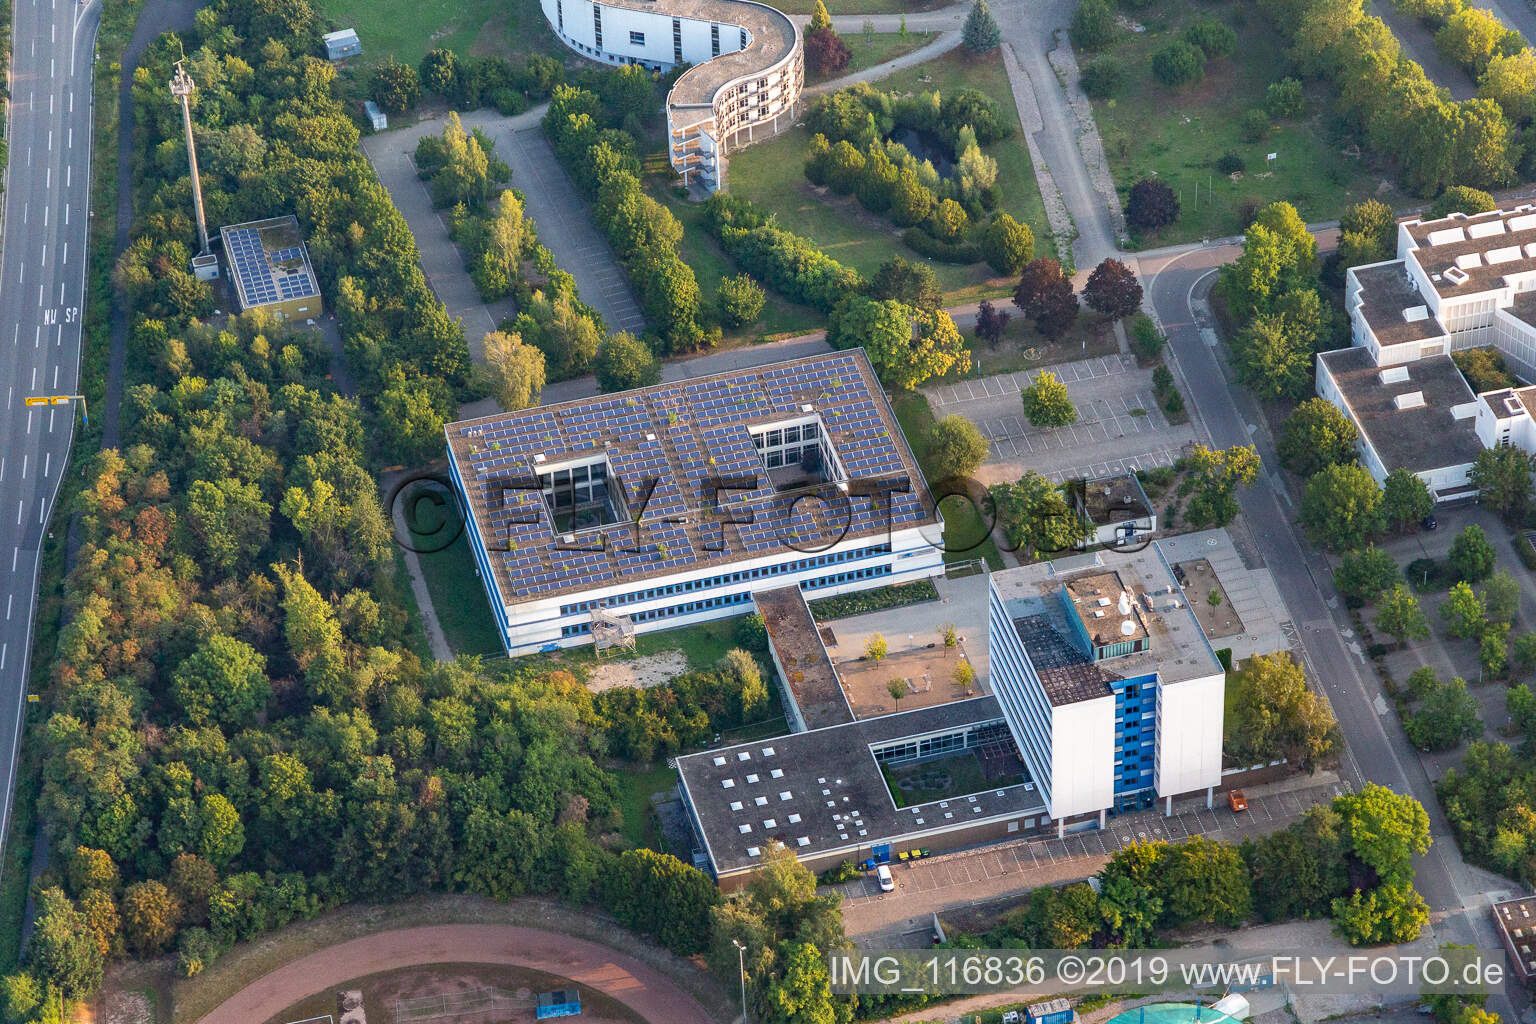 Luftbild von Geschwungener Gebäudekomplex des Pädagogischen Landesinstitut Rheinland-Pfalz in Speyer, Deutschland